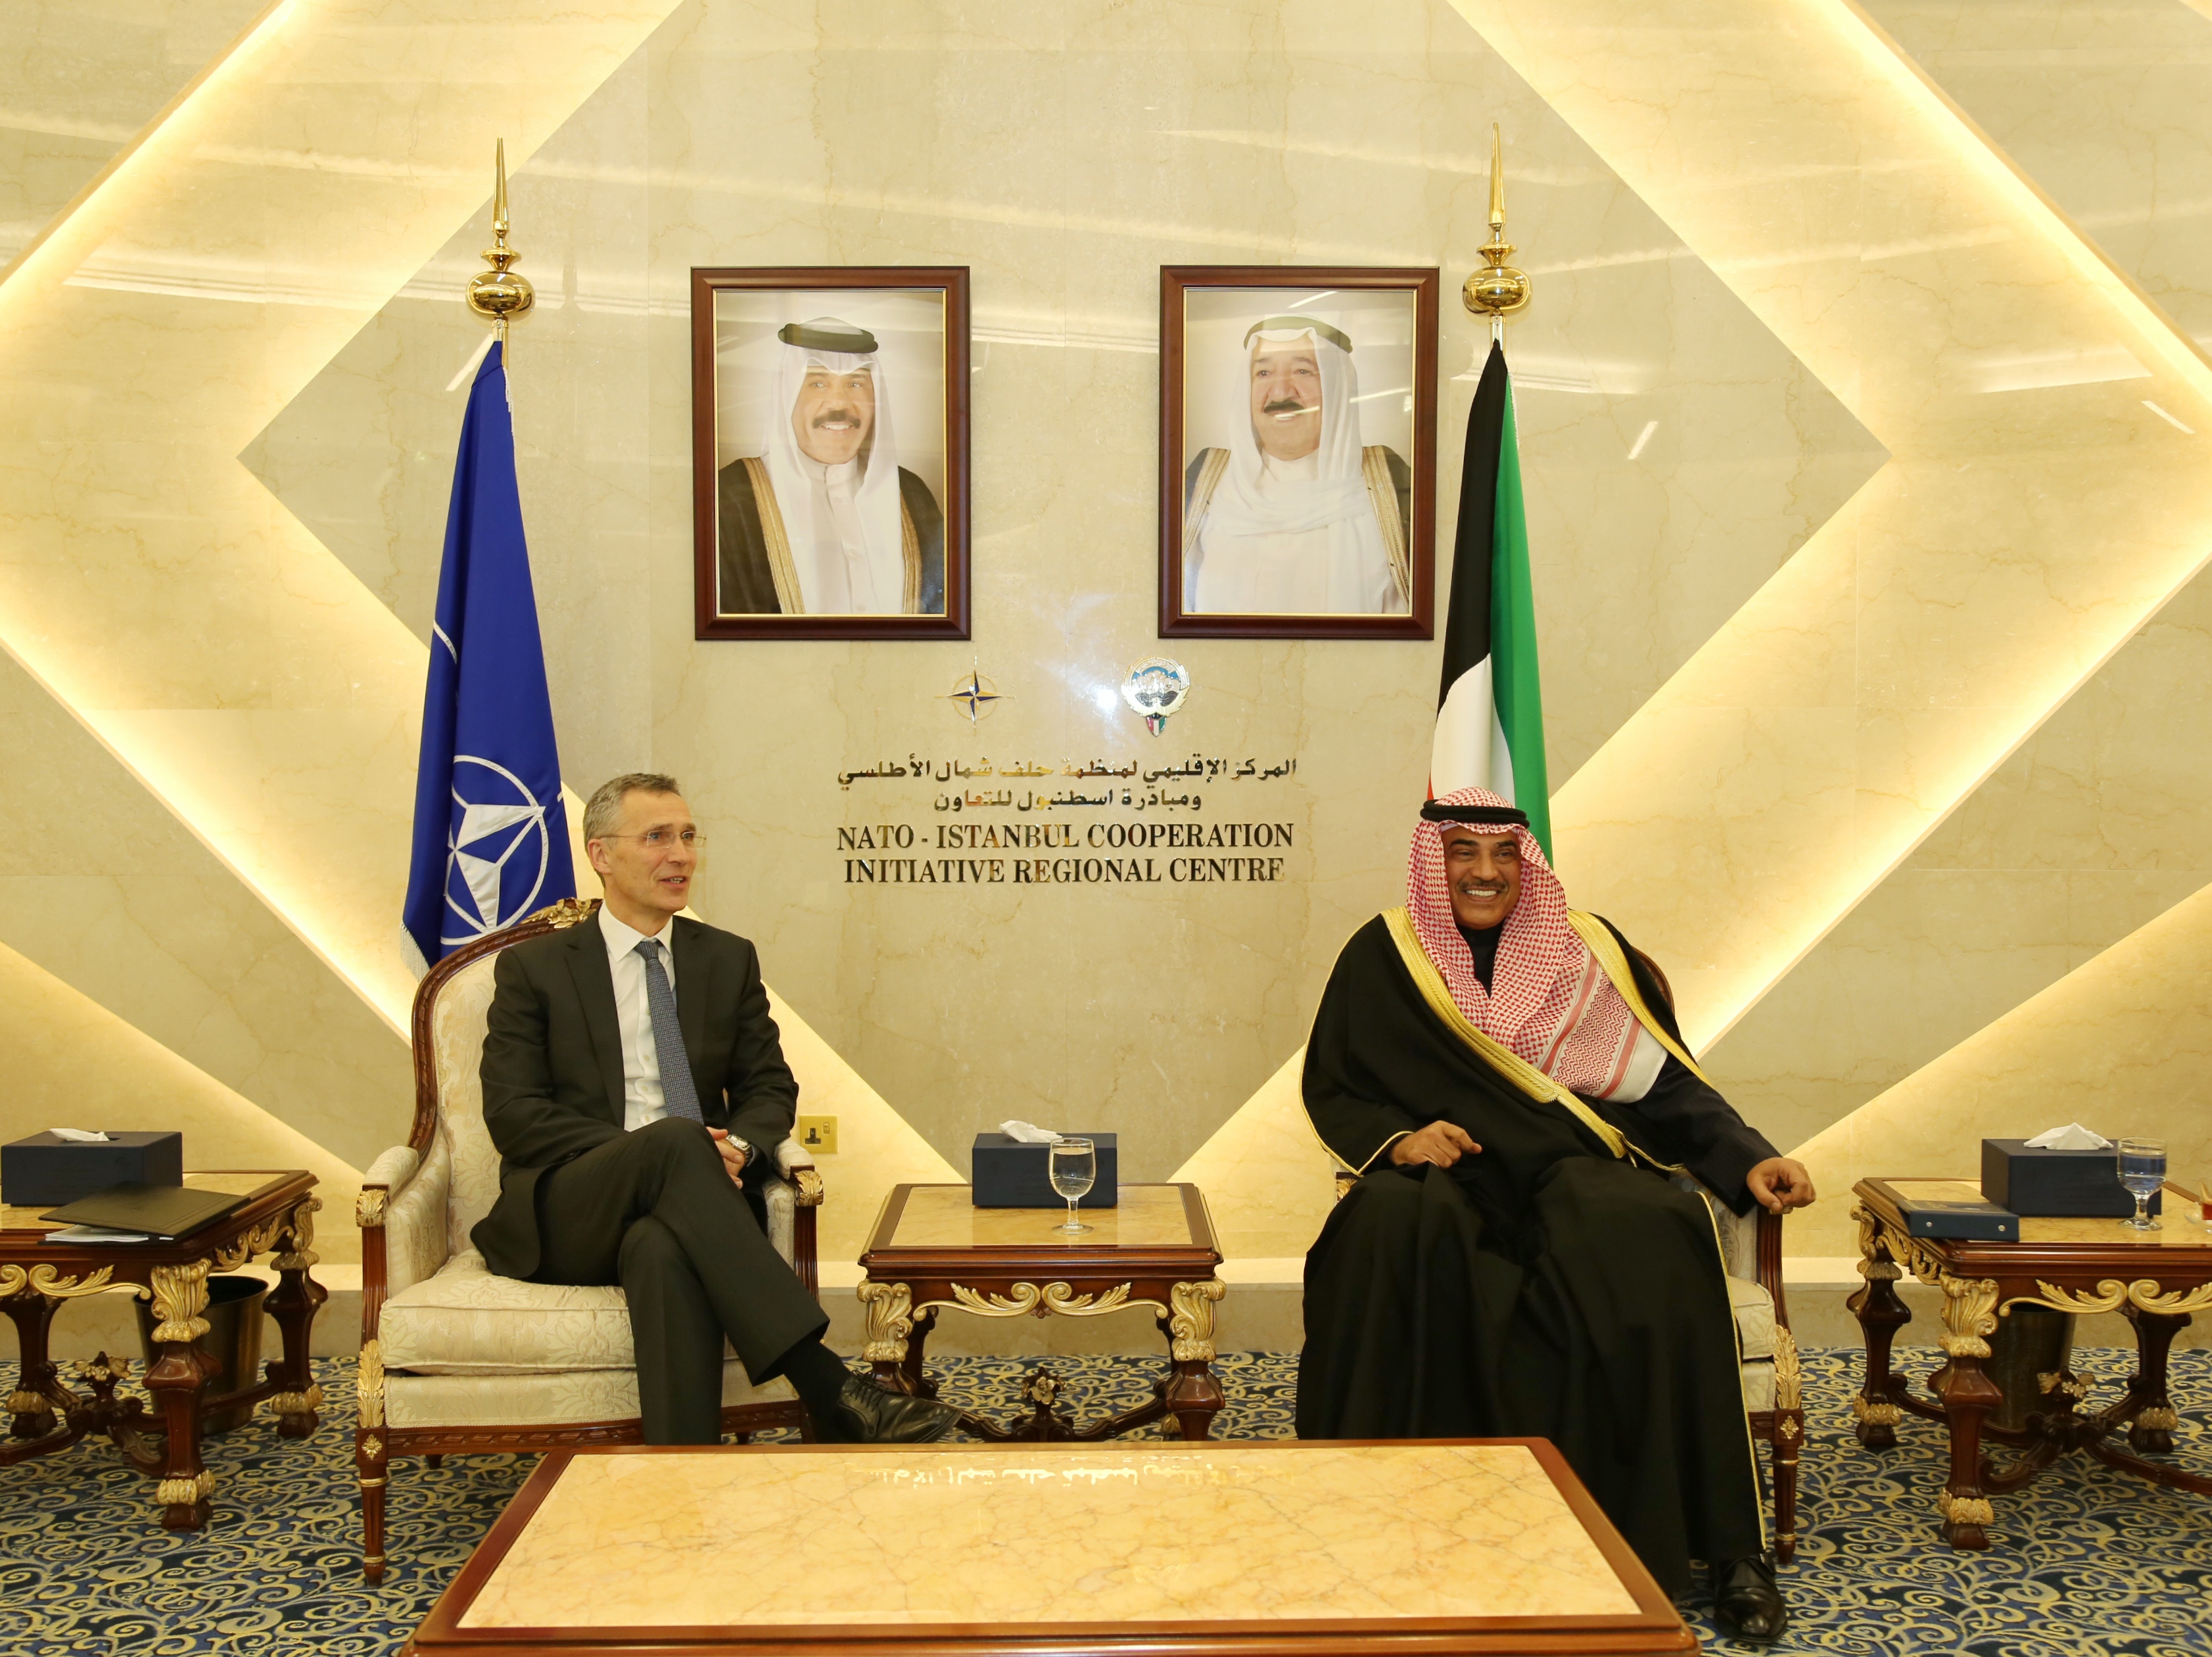 Kuwait First Deputy Premier and Foreign Minister Sheikh Sabah Khaled Al-Hamad Al-Sabah meets NATO Secretary General Jens Stoltenberg